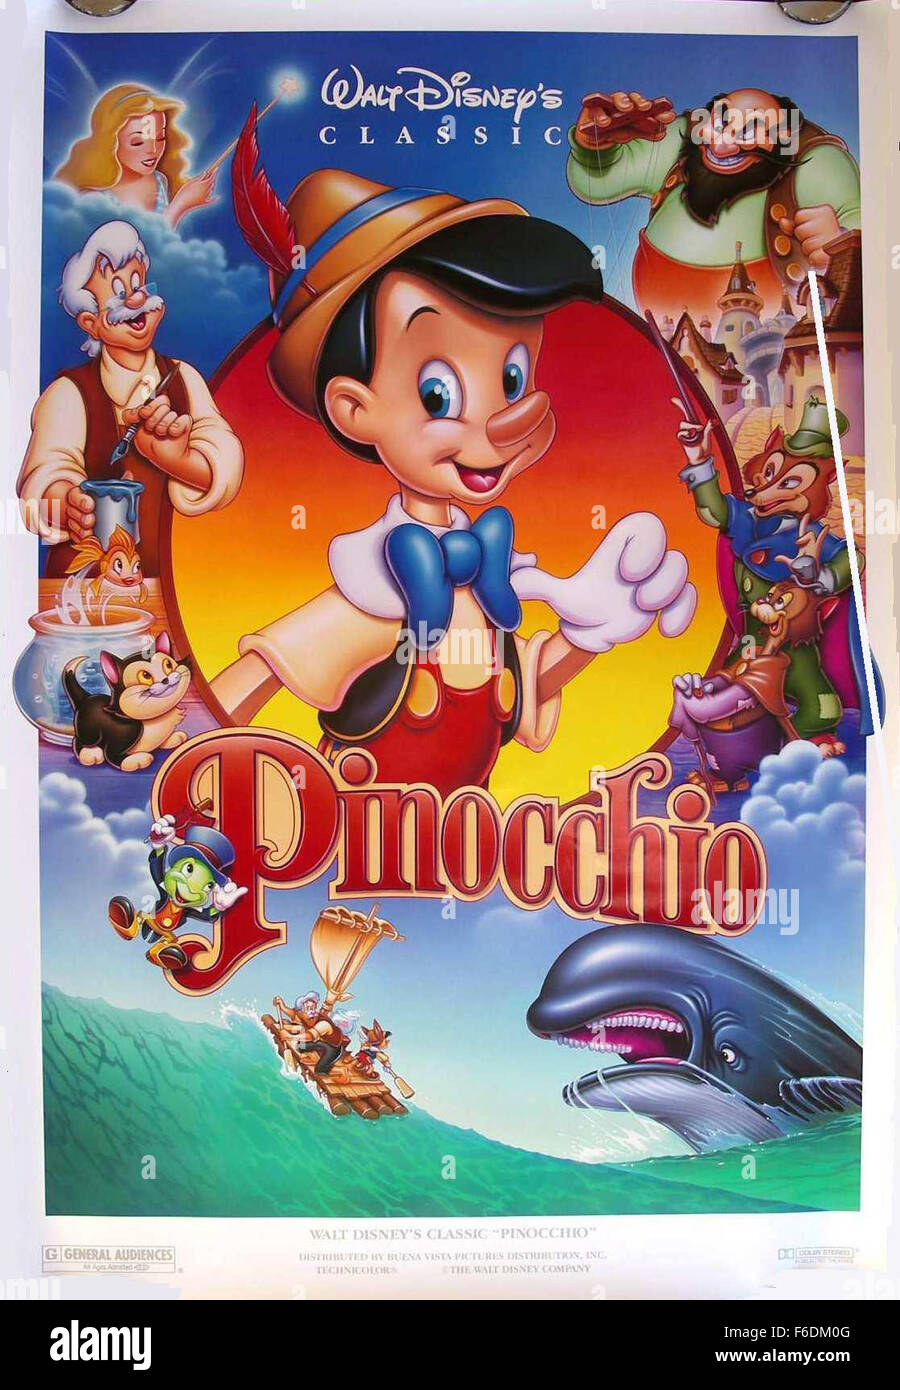 DATE DE SORTIE : 9 février 1940. Titre du film : Pinocchio. STUDIO : Walt Disney Productions. PLOT : Inventeur Gepetto crée une marionnette en bois appelé Pinocchio. Son souhait qu'un vrai petit garçon, Pinocchio est subitement accordée par une fée. La fée Jiminy Cricket attribue à agir comme Pinocchio'sconscience et de le garder hors de l'ennui. Jiminy n'est pas trop bien réussi dans cette entreprise et la plupart du film est passé avec Pinocchio de profondeur en difficulté. Sur la photo : . Banque D'Images